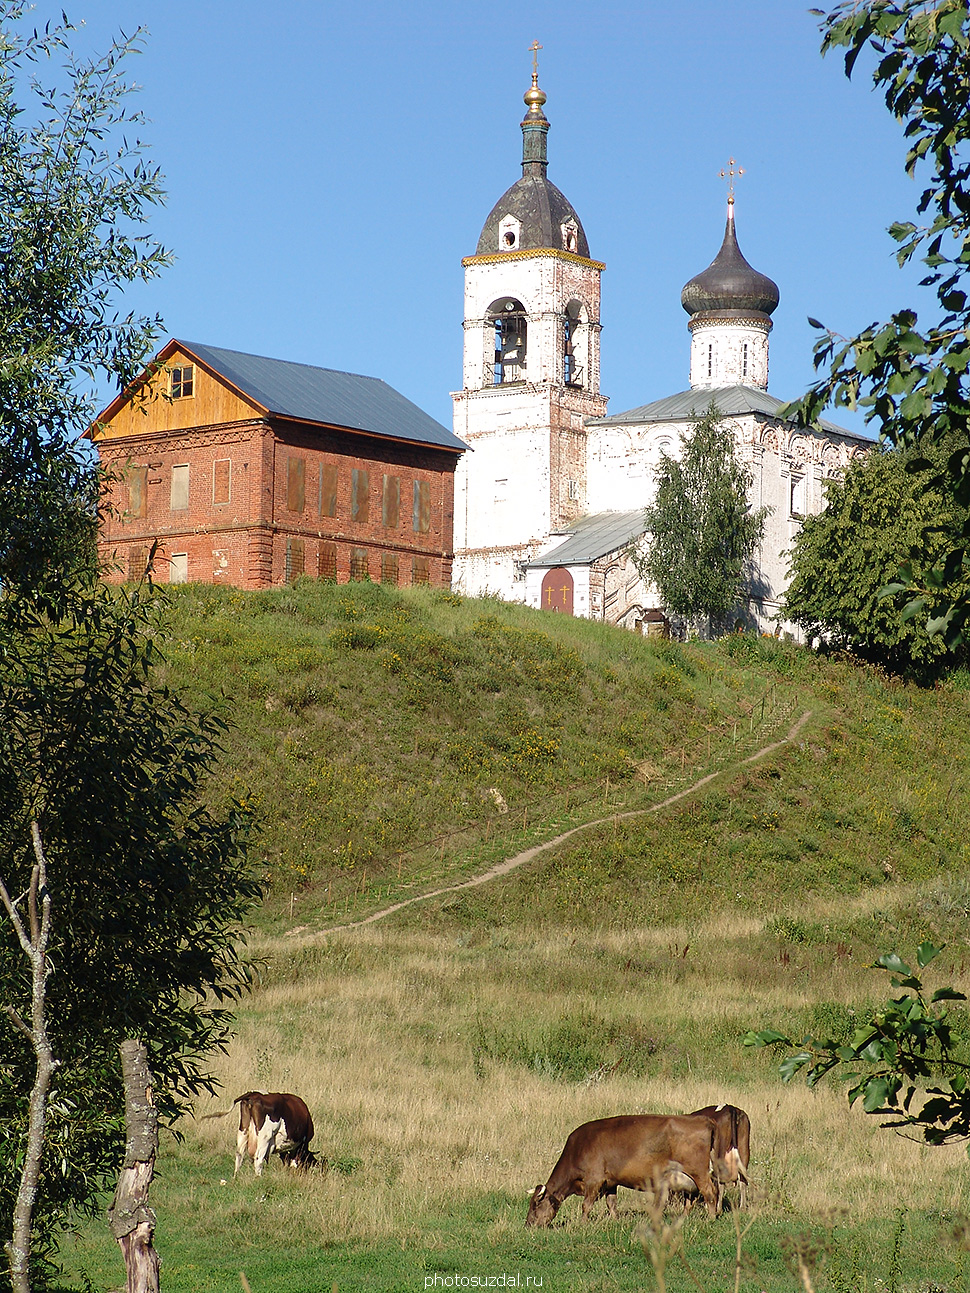 Благовещенская церковь с колокольней в селе Сновицы